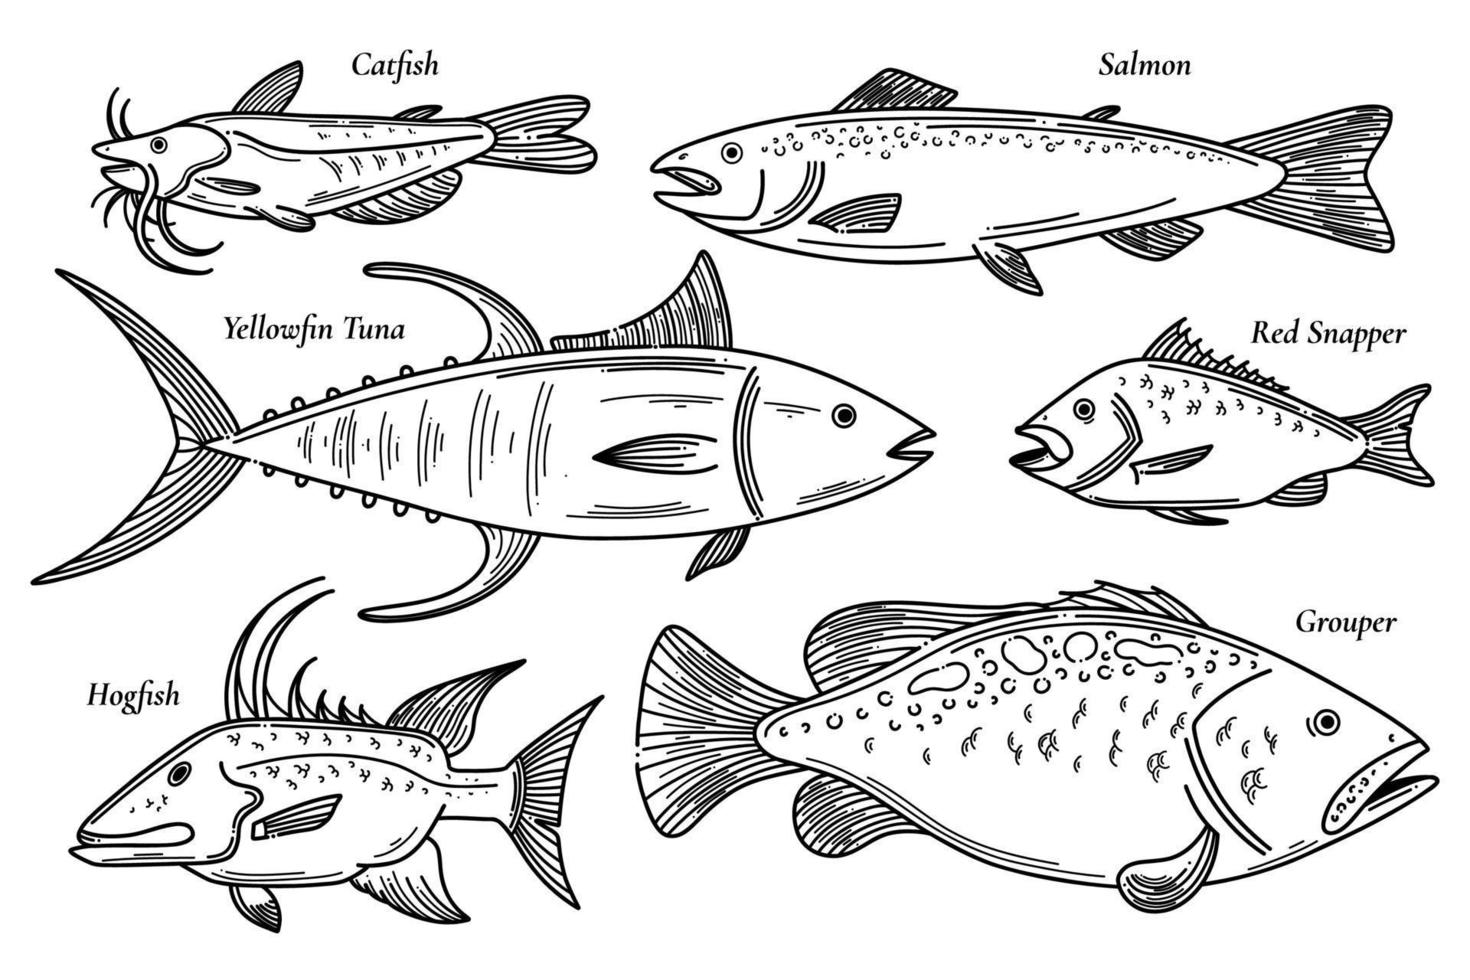 colección de ilustraciones vectoriales de peces. conjunto de mariscos scetch. bagre, salmón, pargo rojo, atún de aleta amarilla, mero, garabato de pez cerdo conjunto de ilustraciones de peces vector